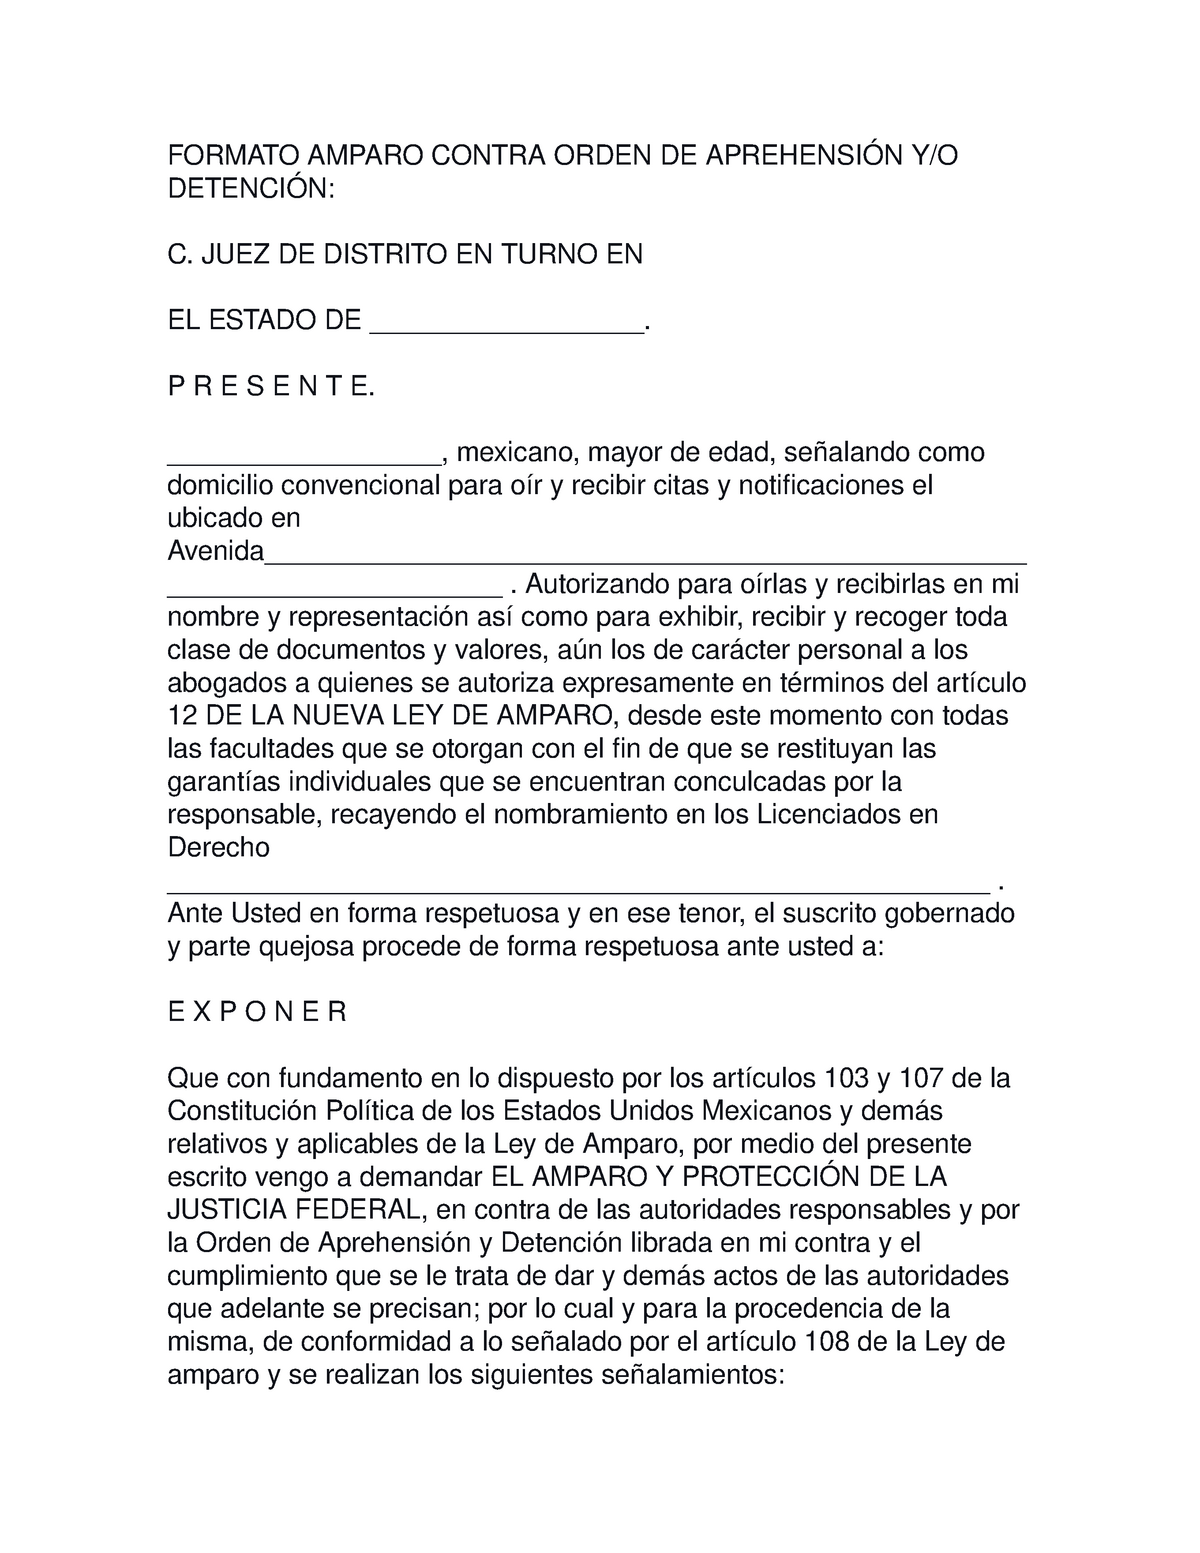 Amparo Contra Orden DE AprehensiÓn Y Detencion - FORMATO AMPARO CONTRA ORDEN  DE C. JUEZ DE DISTRITO - Studocu